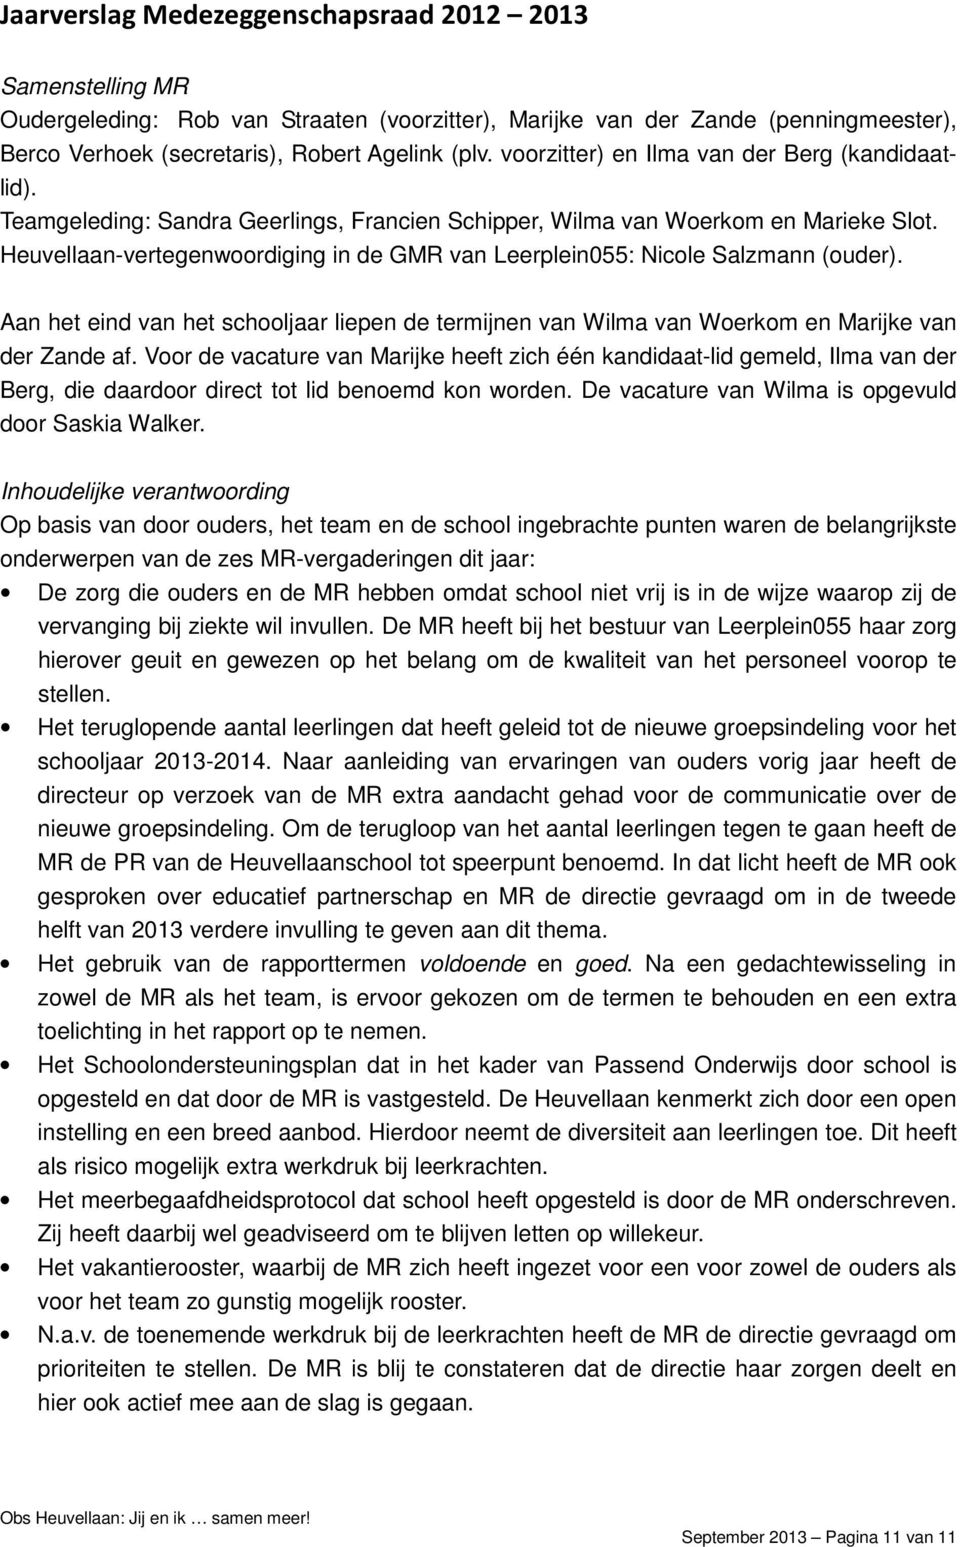 Heuvellaan-vertegenwoordiging in de GMR van Leerplein055: Nicole Salzmann (ouder). Aan het eind van het schooljaar liepen de termijnen van Wilma van Woerkom en Marijke van der Zande af.